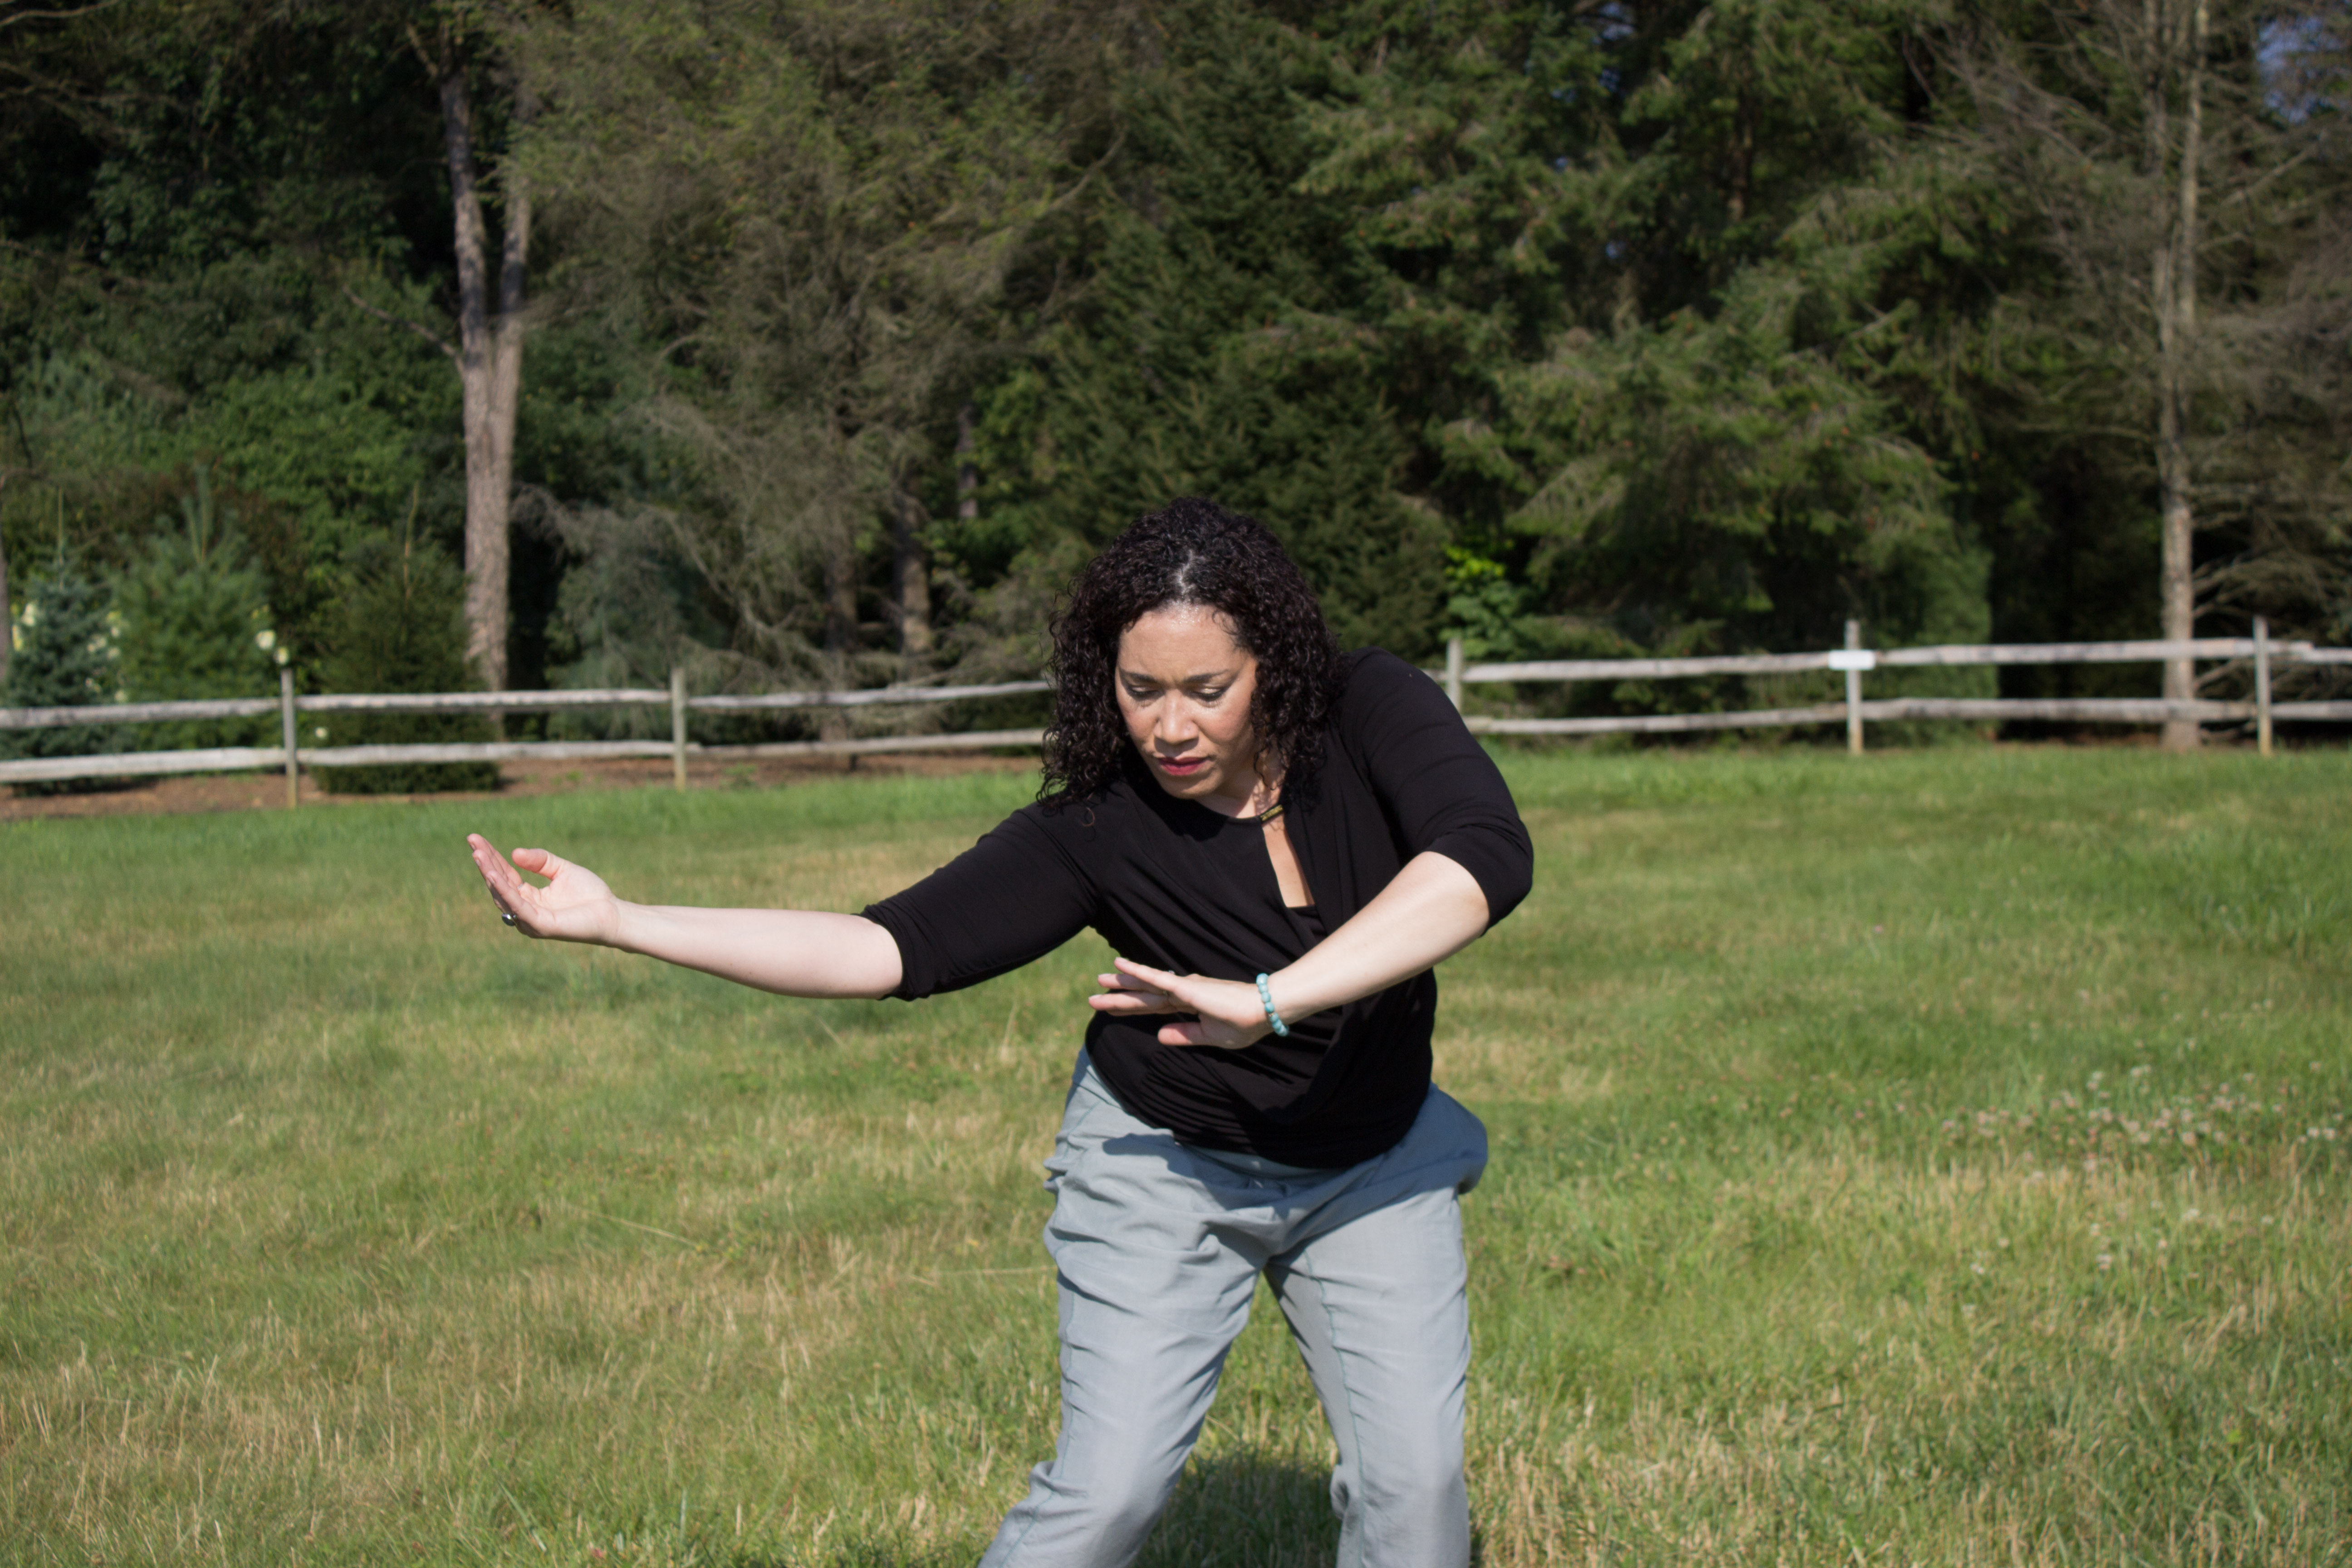 Elisha Clark Halpin Dancing in a field of green grass